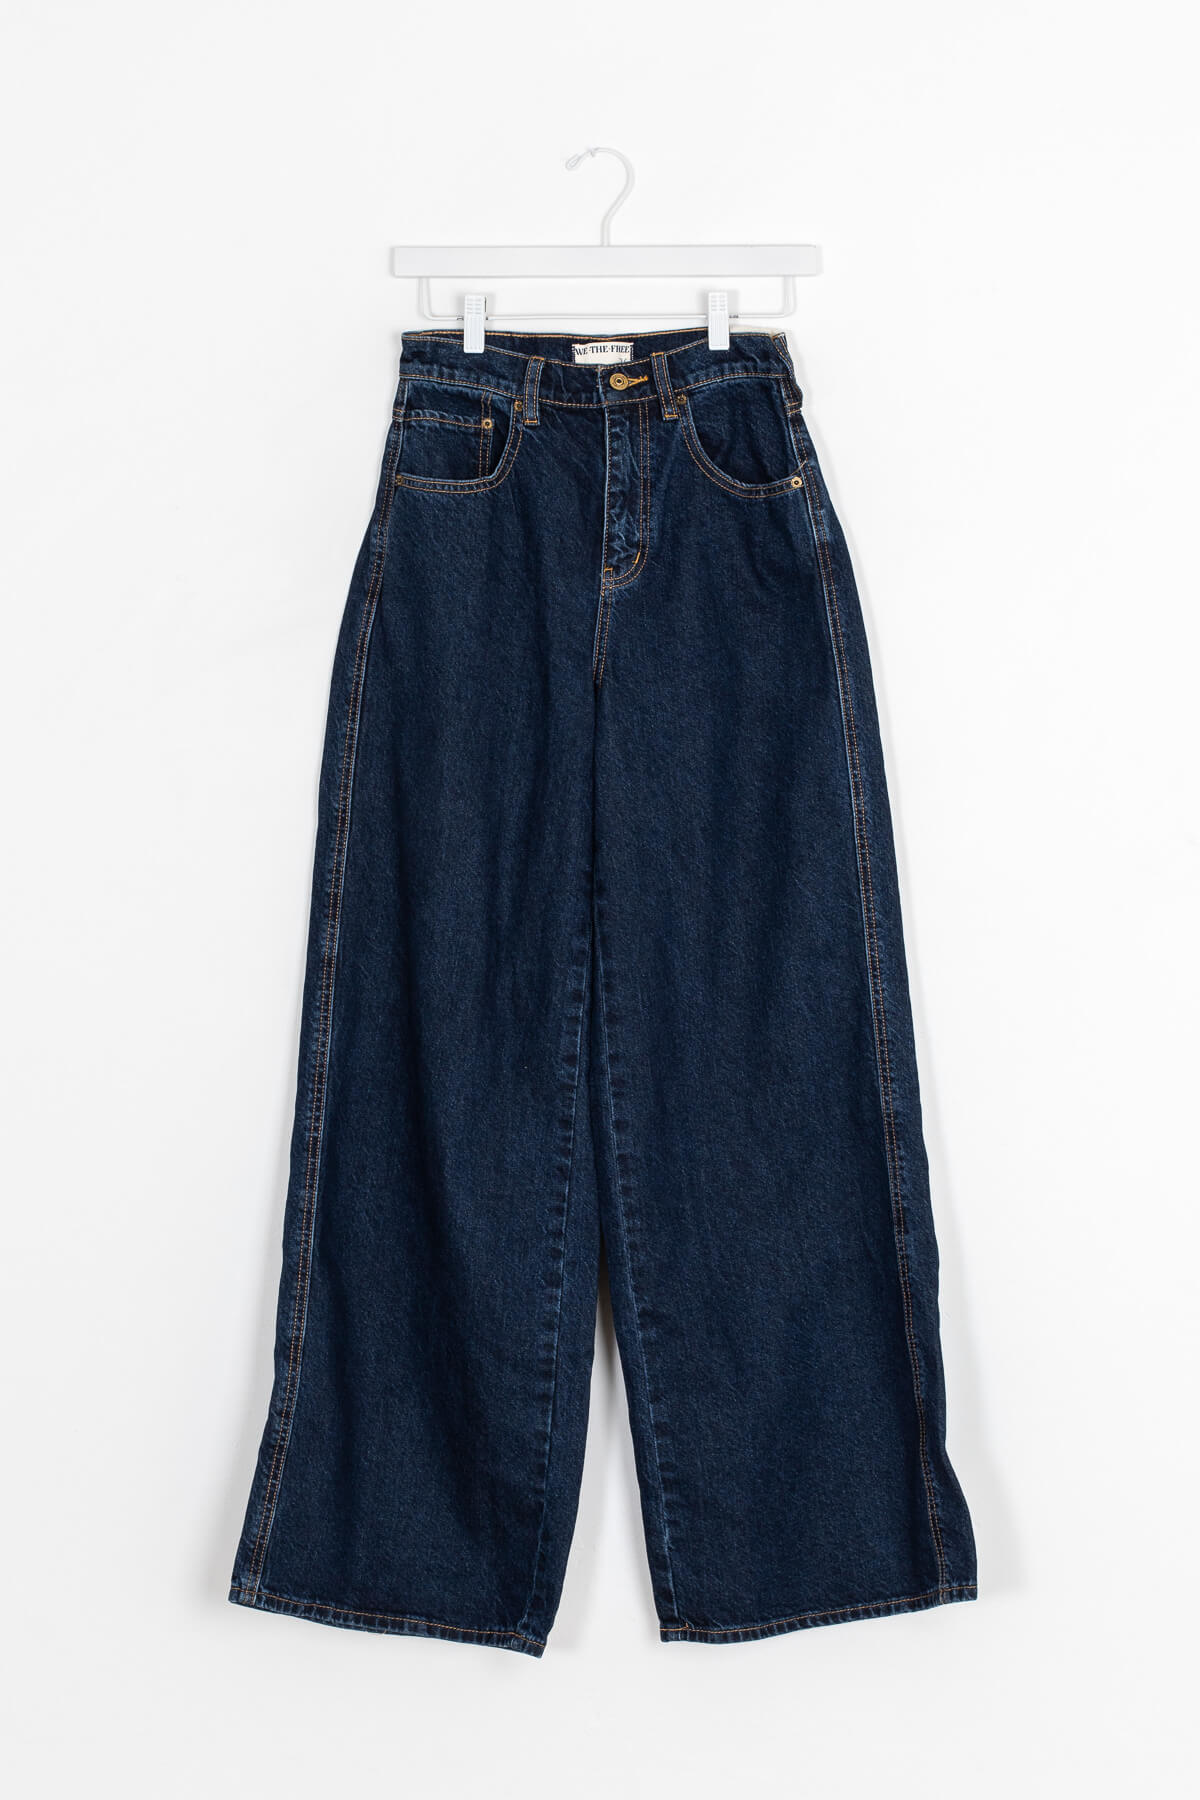 Women's dark blue wide leg jeans | Kariella